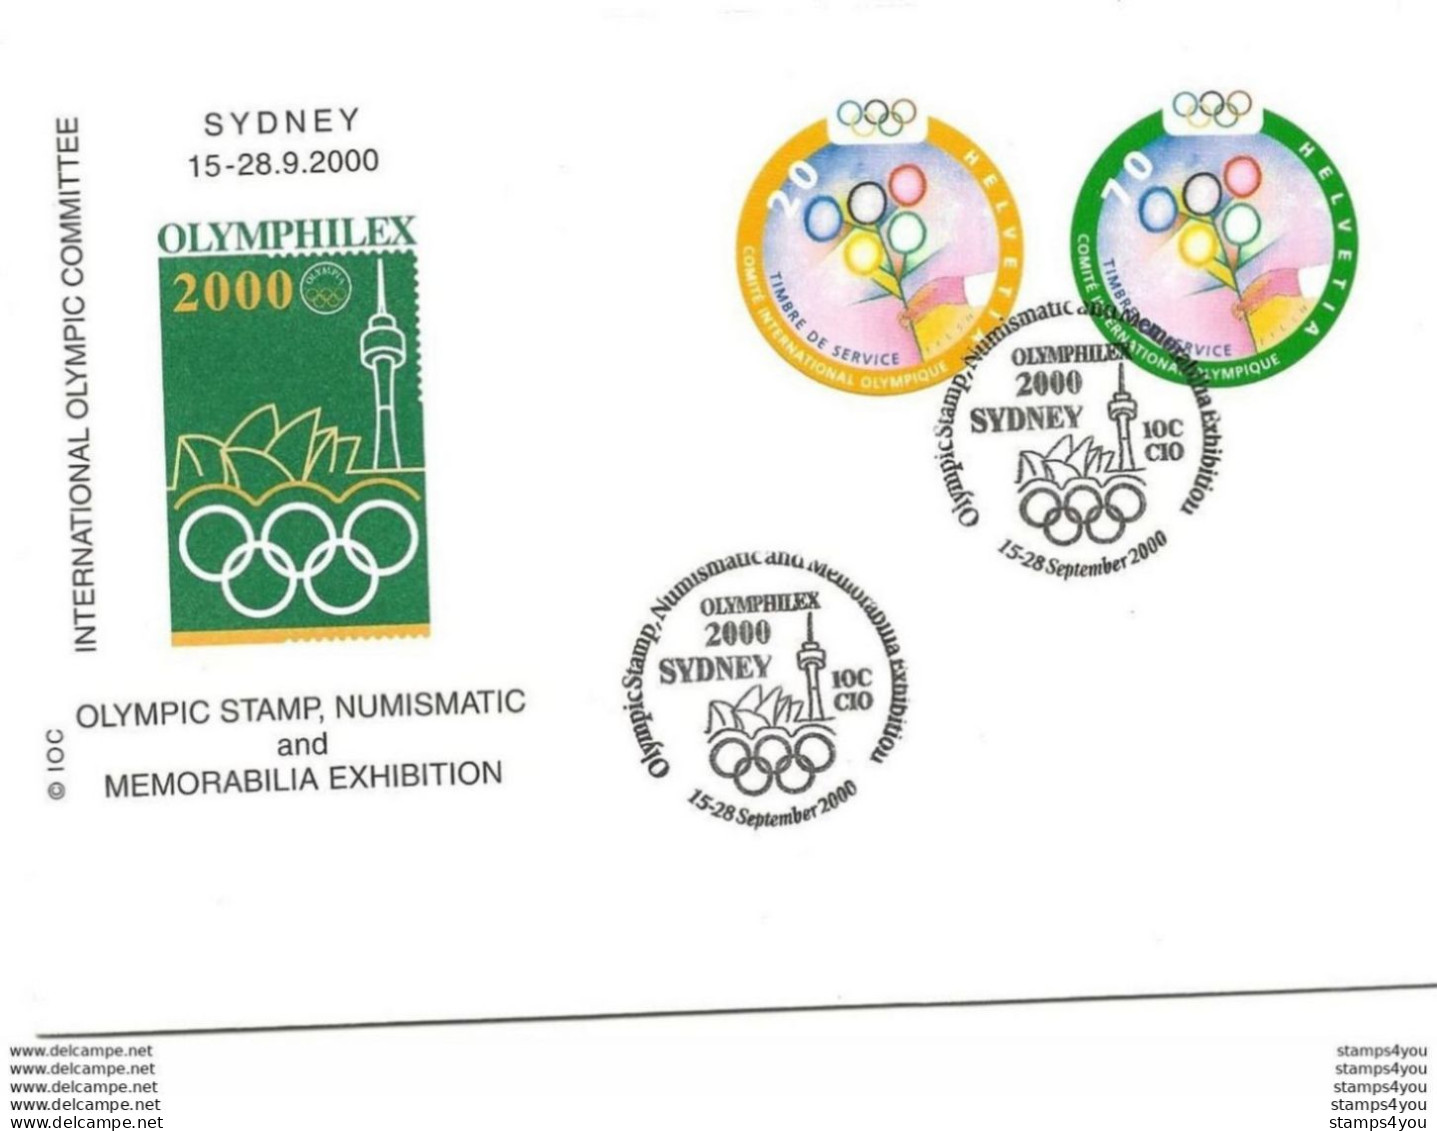 291 - 19 - Enveloppe Avec Timbres CIO Et Oblit Spéciale Olymphilex Sydney 2000 - Estate 2000: Sydney